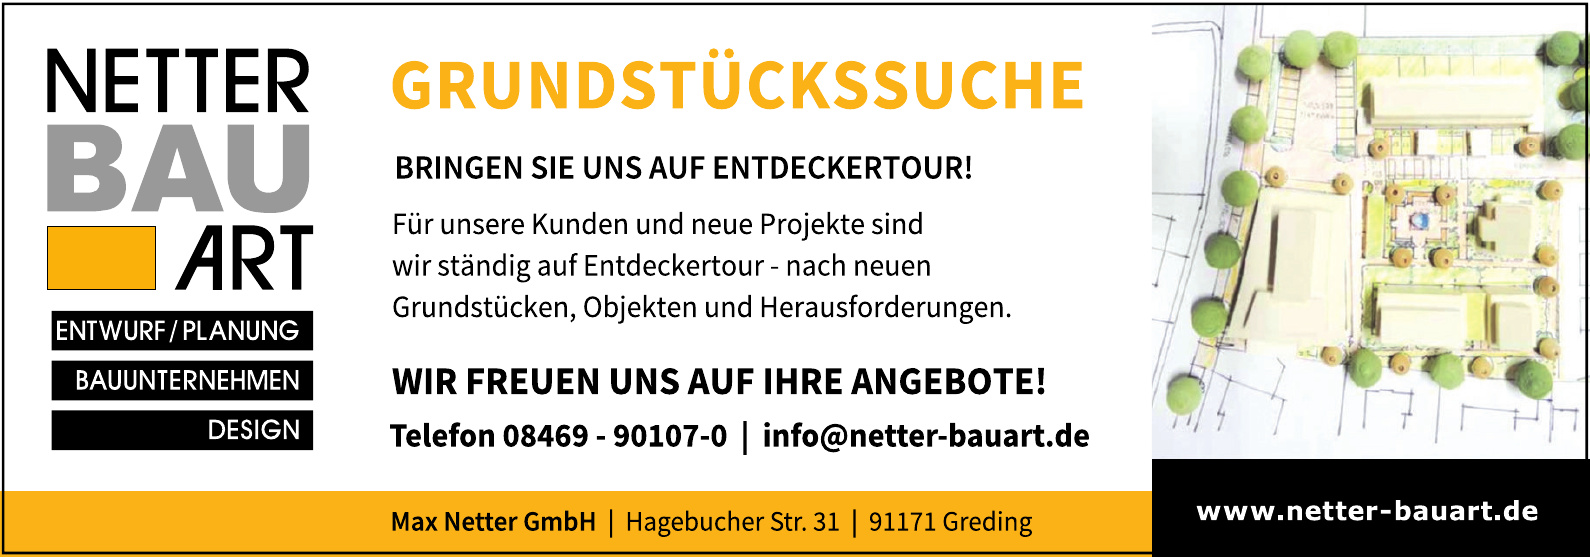 Netter Bau Art - Max Netter GmbH